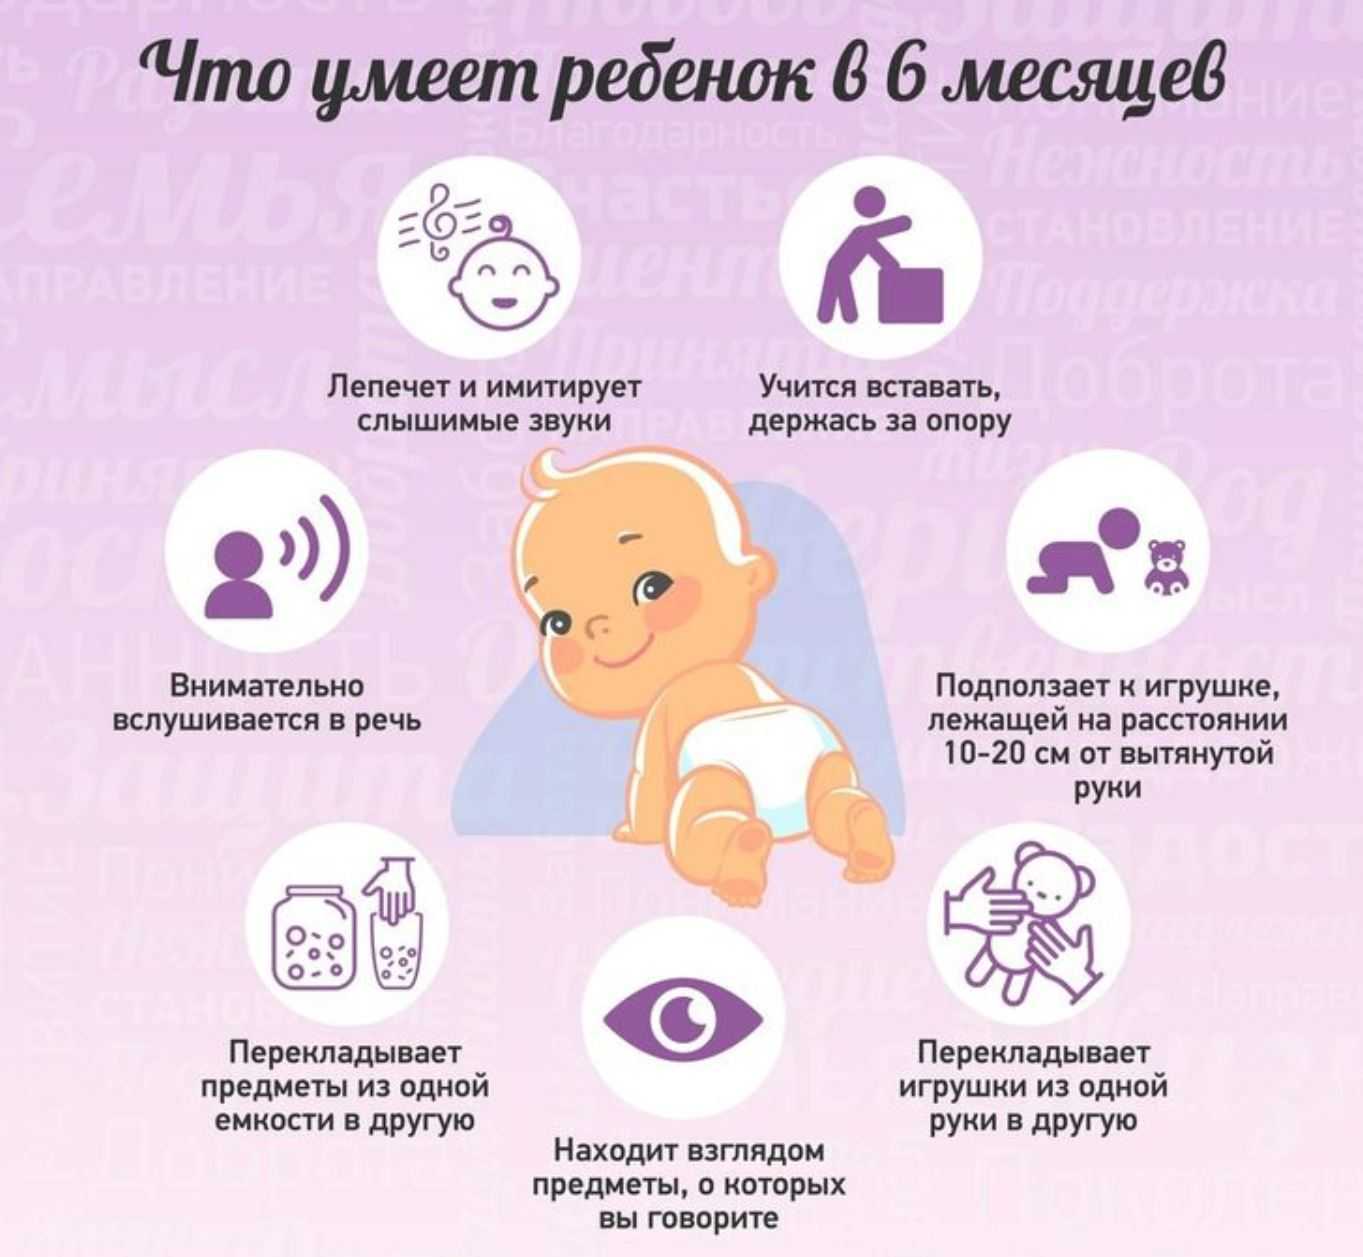 Что должен уметь делать здоровый ребенок в 6 месяцев Показатели удовлетворительного физического и нервно-психического состояния малыша в полгода. Тесты развития ребенка.